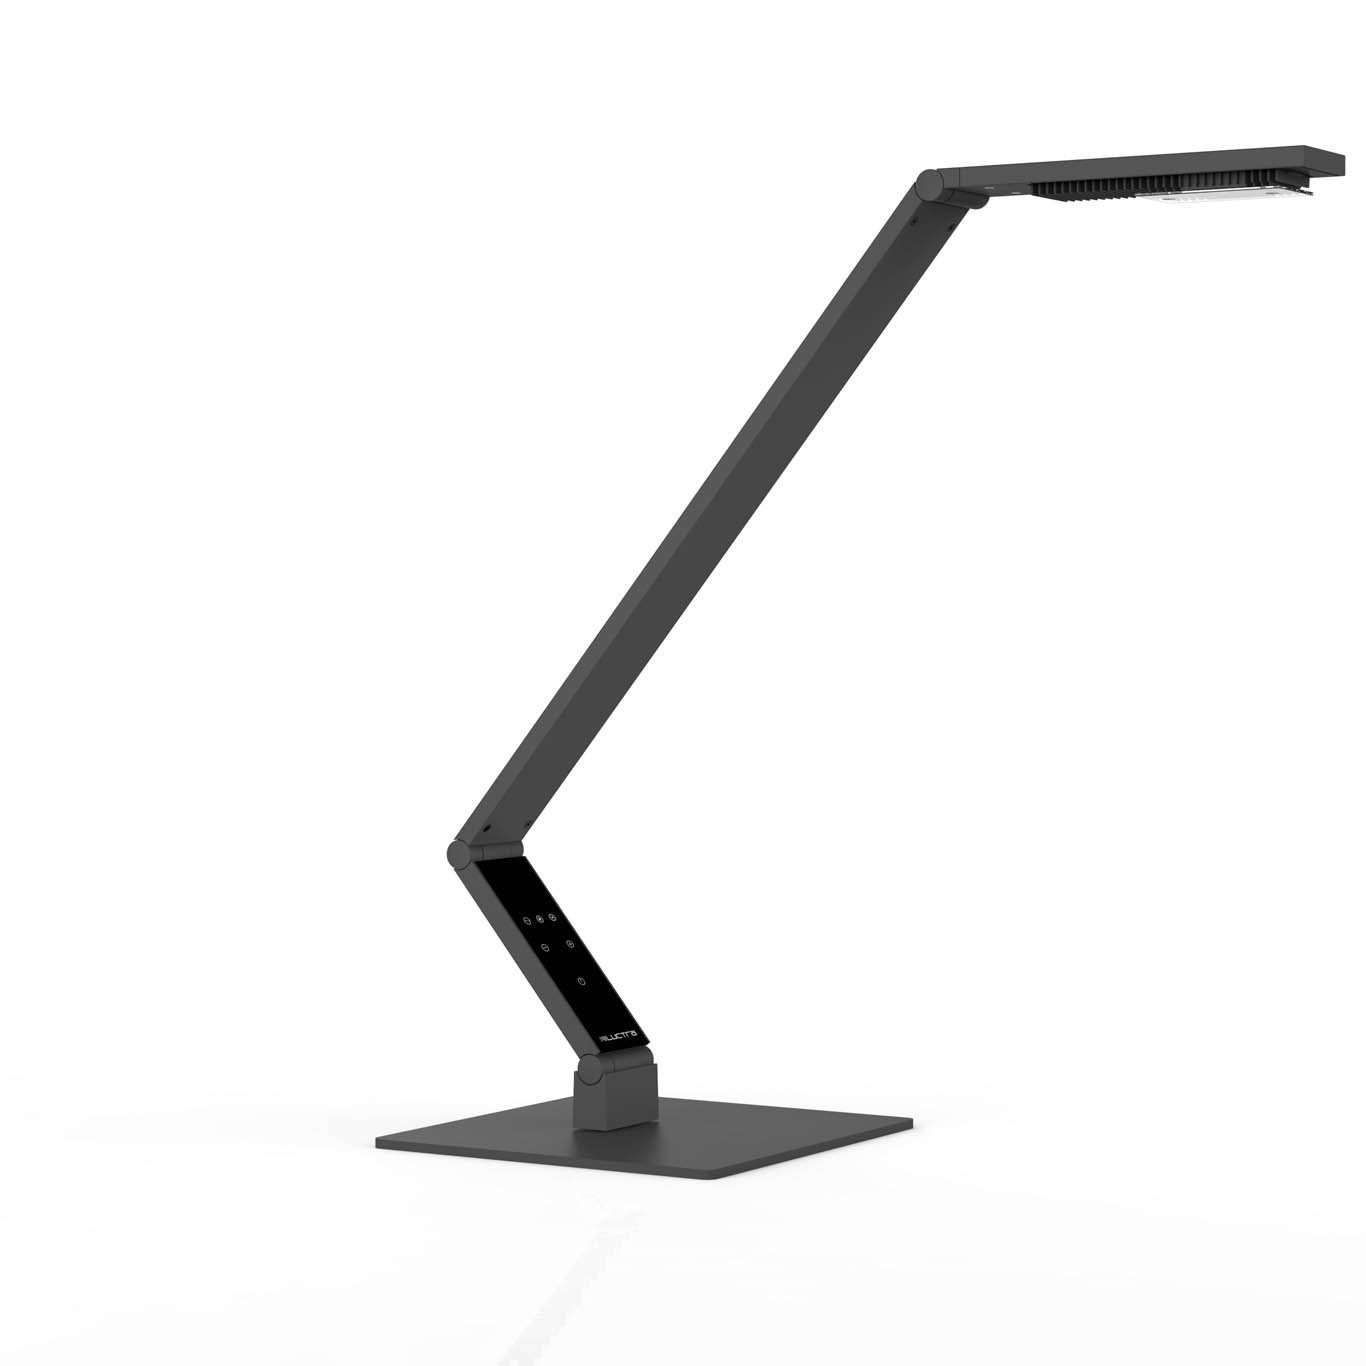 LUCTRA Tischleuchte TABLE LINEAR BASE, Table Linear Base LED Schreibtischlampe, biologisch wirksames Licht schwarz